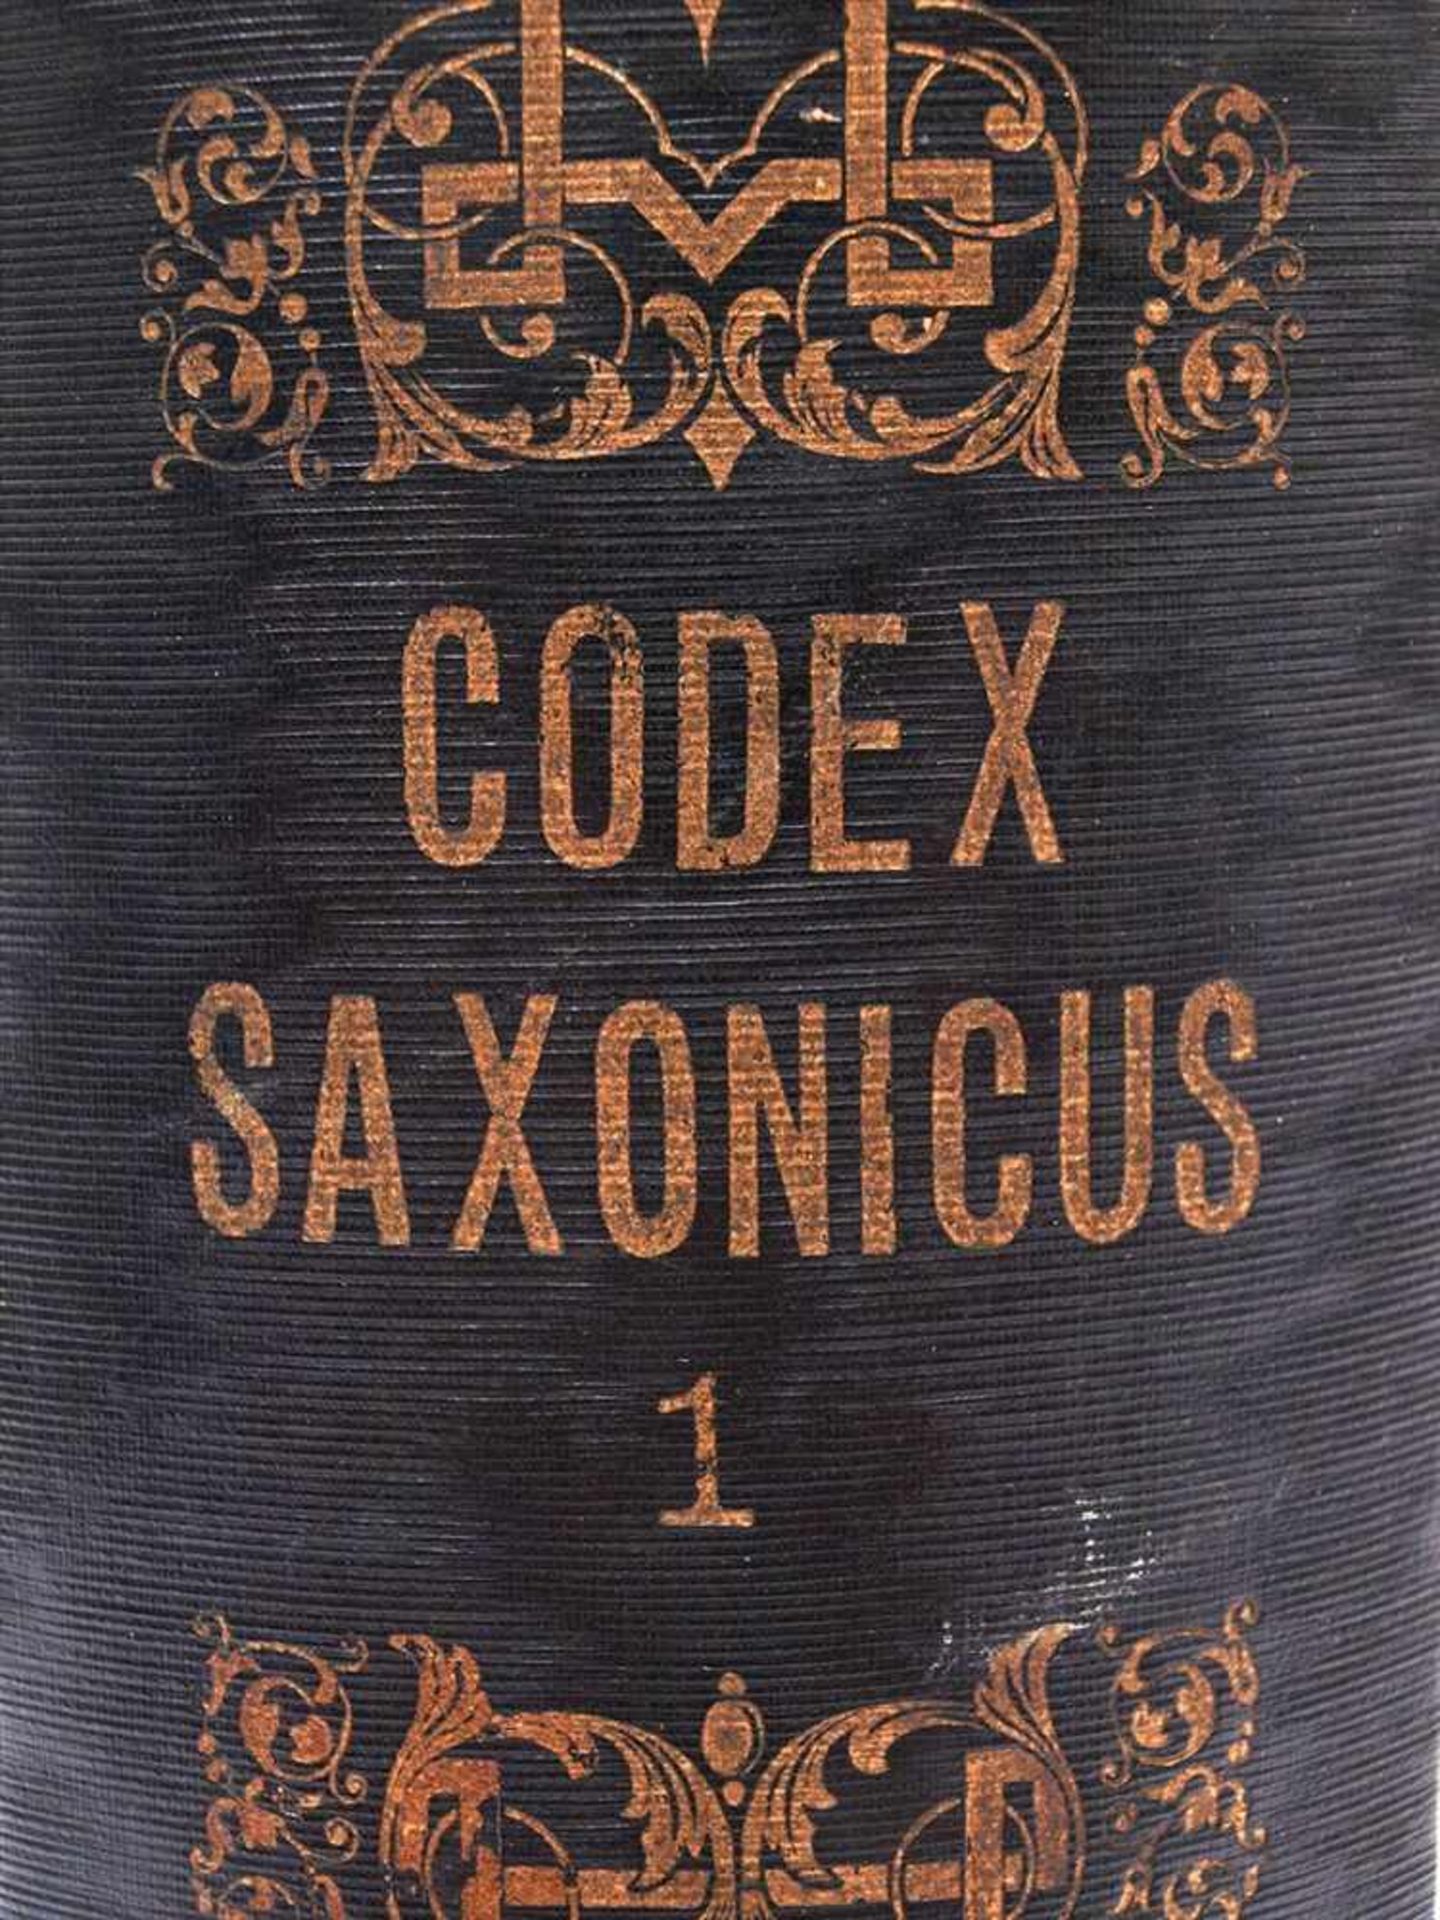 Codex Saxonicus2 Bde., Reclam, Leipzig 1842. Sammlung der sächsischen Gesetze aus der Zeit von - Bild 2 aus 2